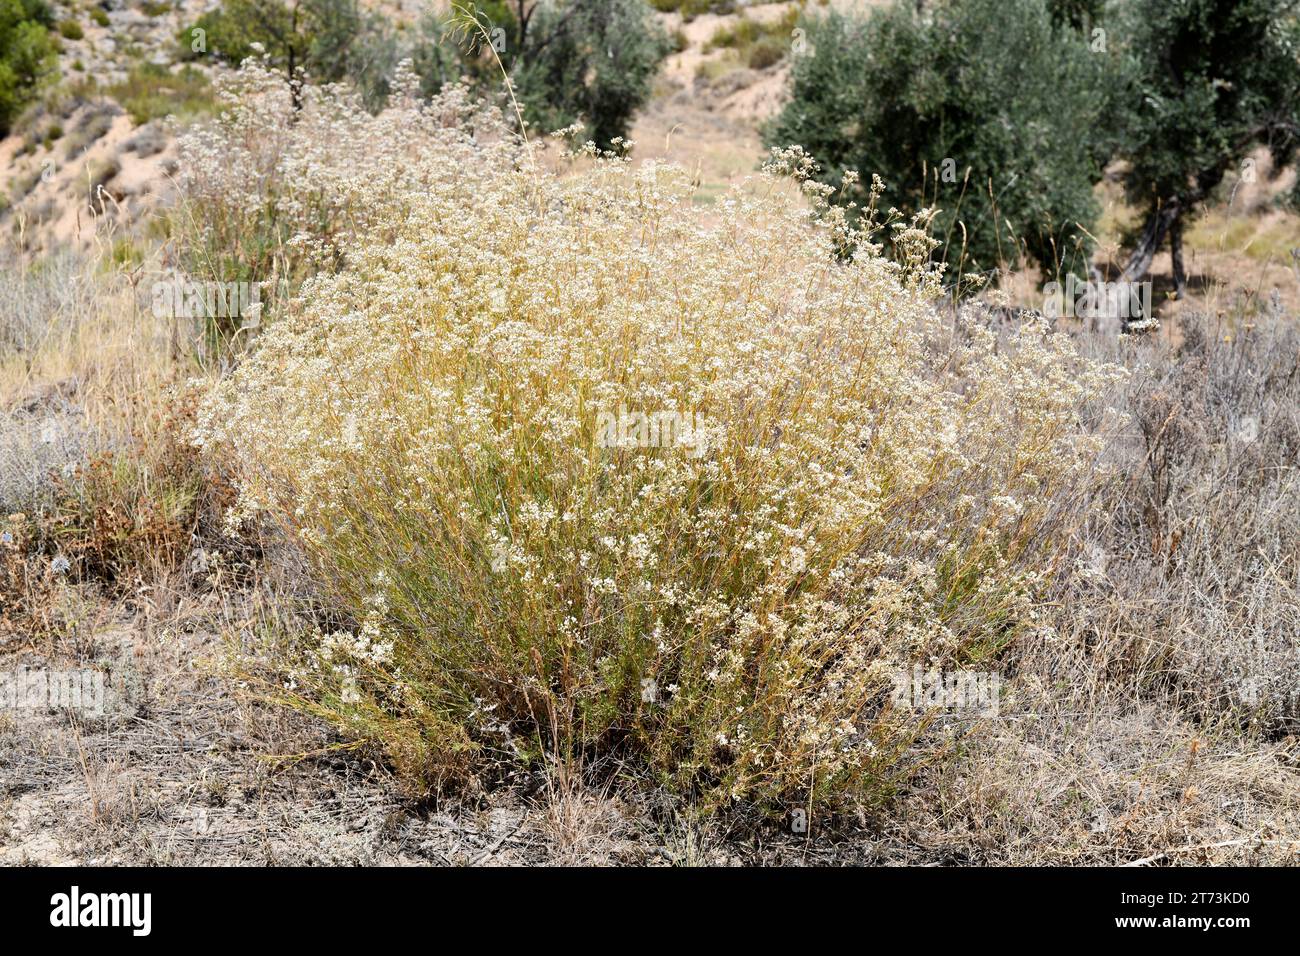 Albada (Gypsophila struthium) ist ein in Zentral- und Ostspanien endemischer Unterstrauch. Wächst auf Gipsböden. Dieses Foto wurde in Arino, Teruel, Aragon gemacht Stockfoto